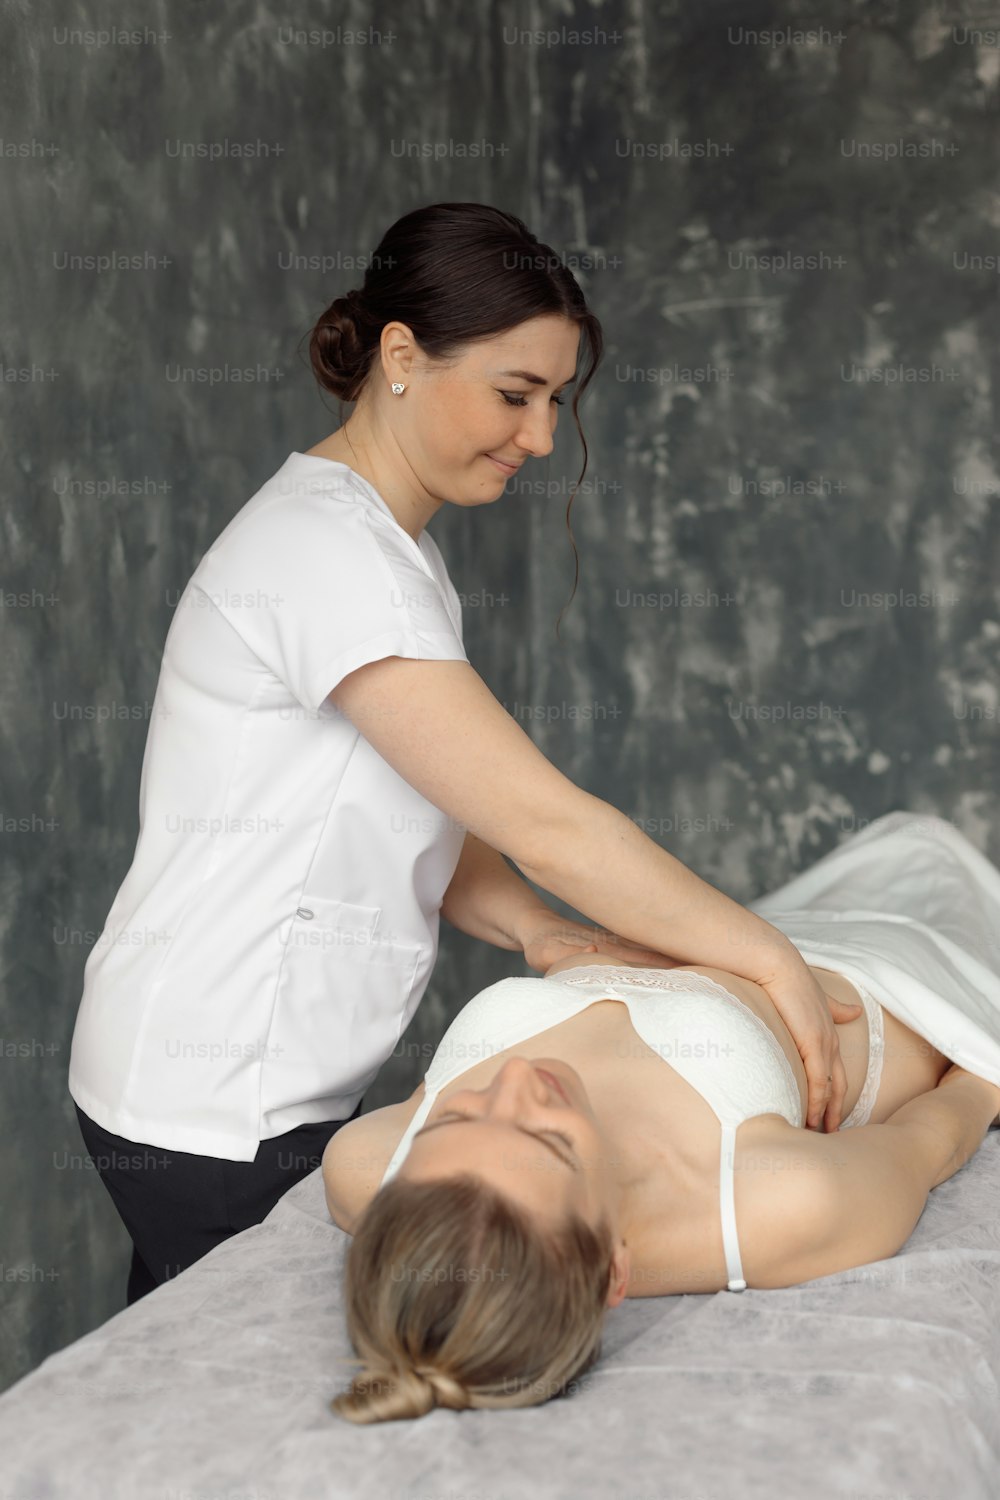 흰 속옷 차림으로 병원 소파에 누워 있는 여성의 갈비뼈를 검진하는 의료 캐비닛의 정골 의사. 전문 전문의 임명 및 검사. 건강 관리 및 질병 치료 개념.